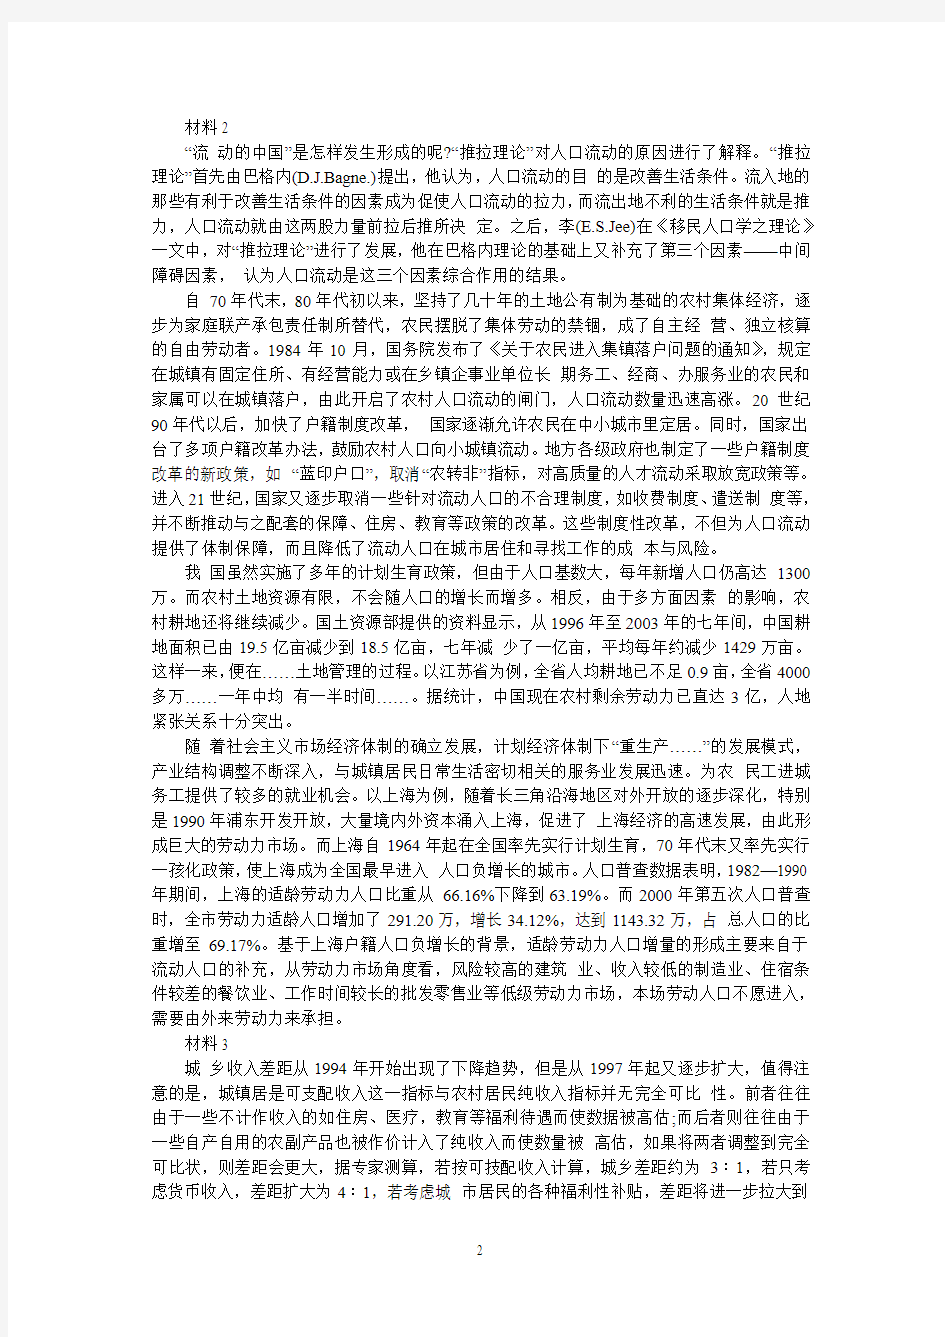 2013年江西省公务员考试申论真题及参考答案